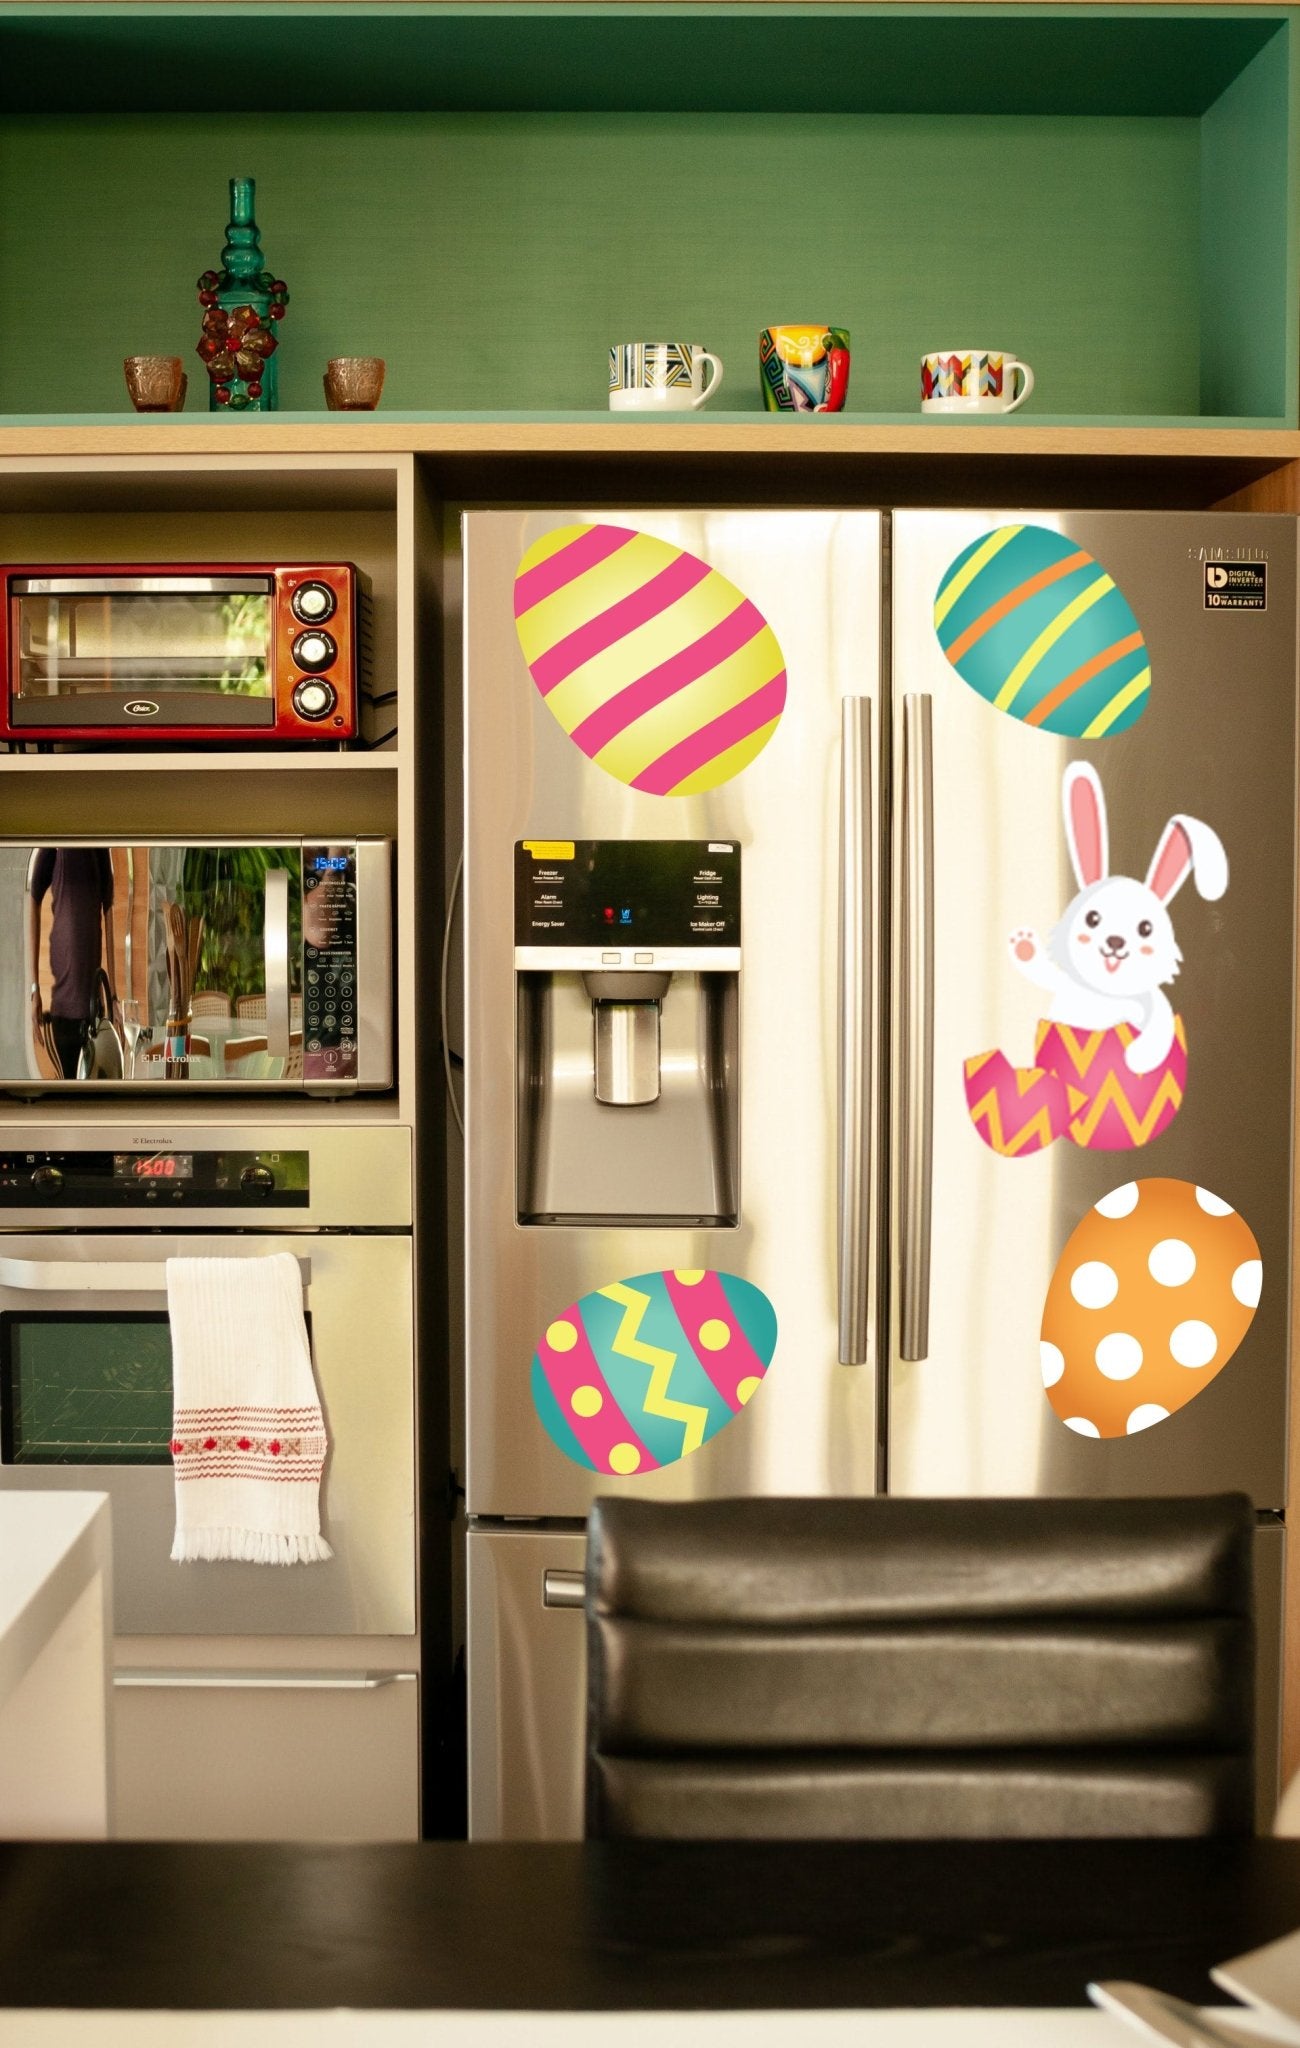 Happy Easter Garage Magnet (20086)